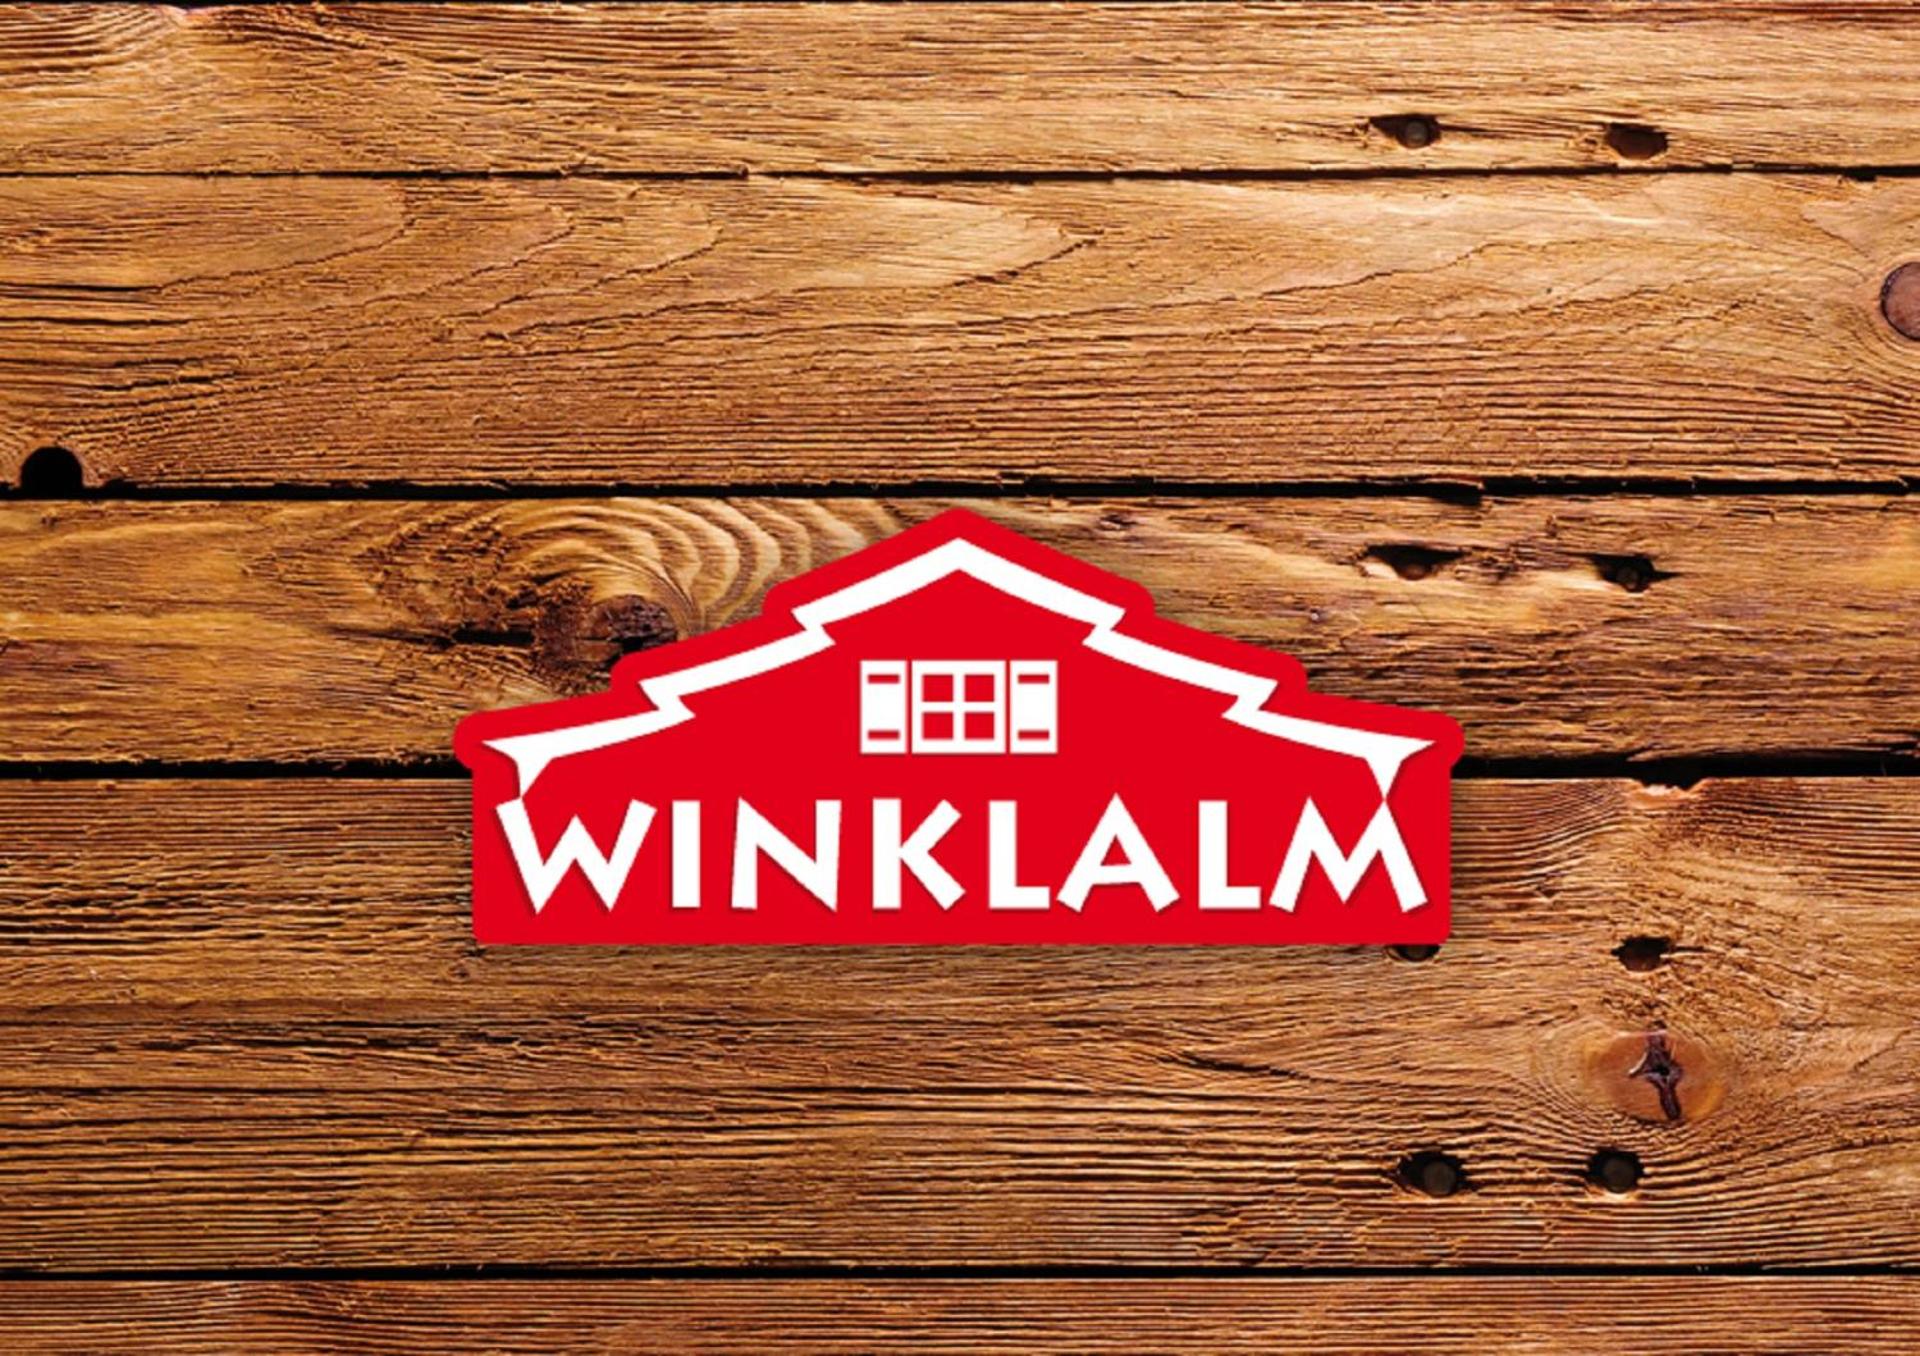 Winklalm